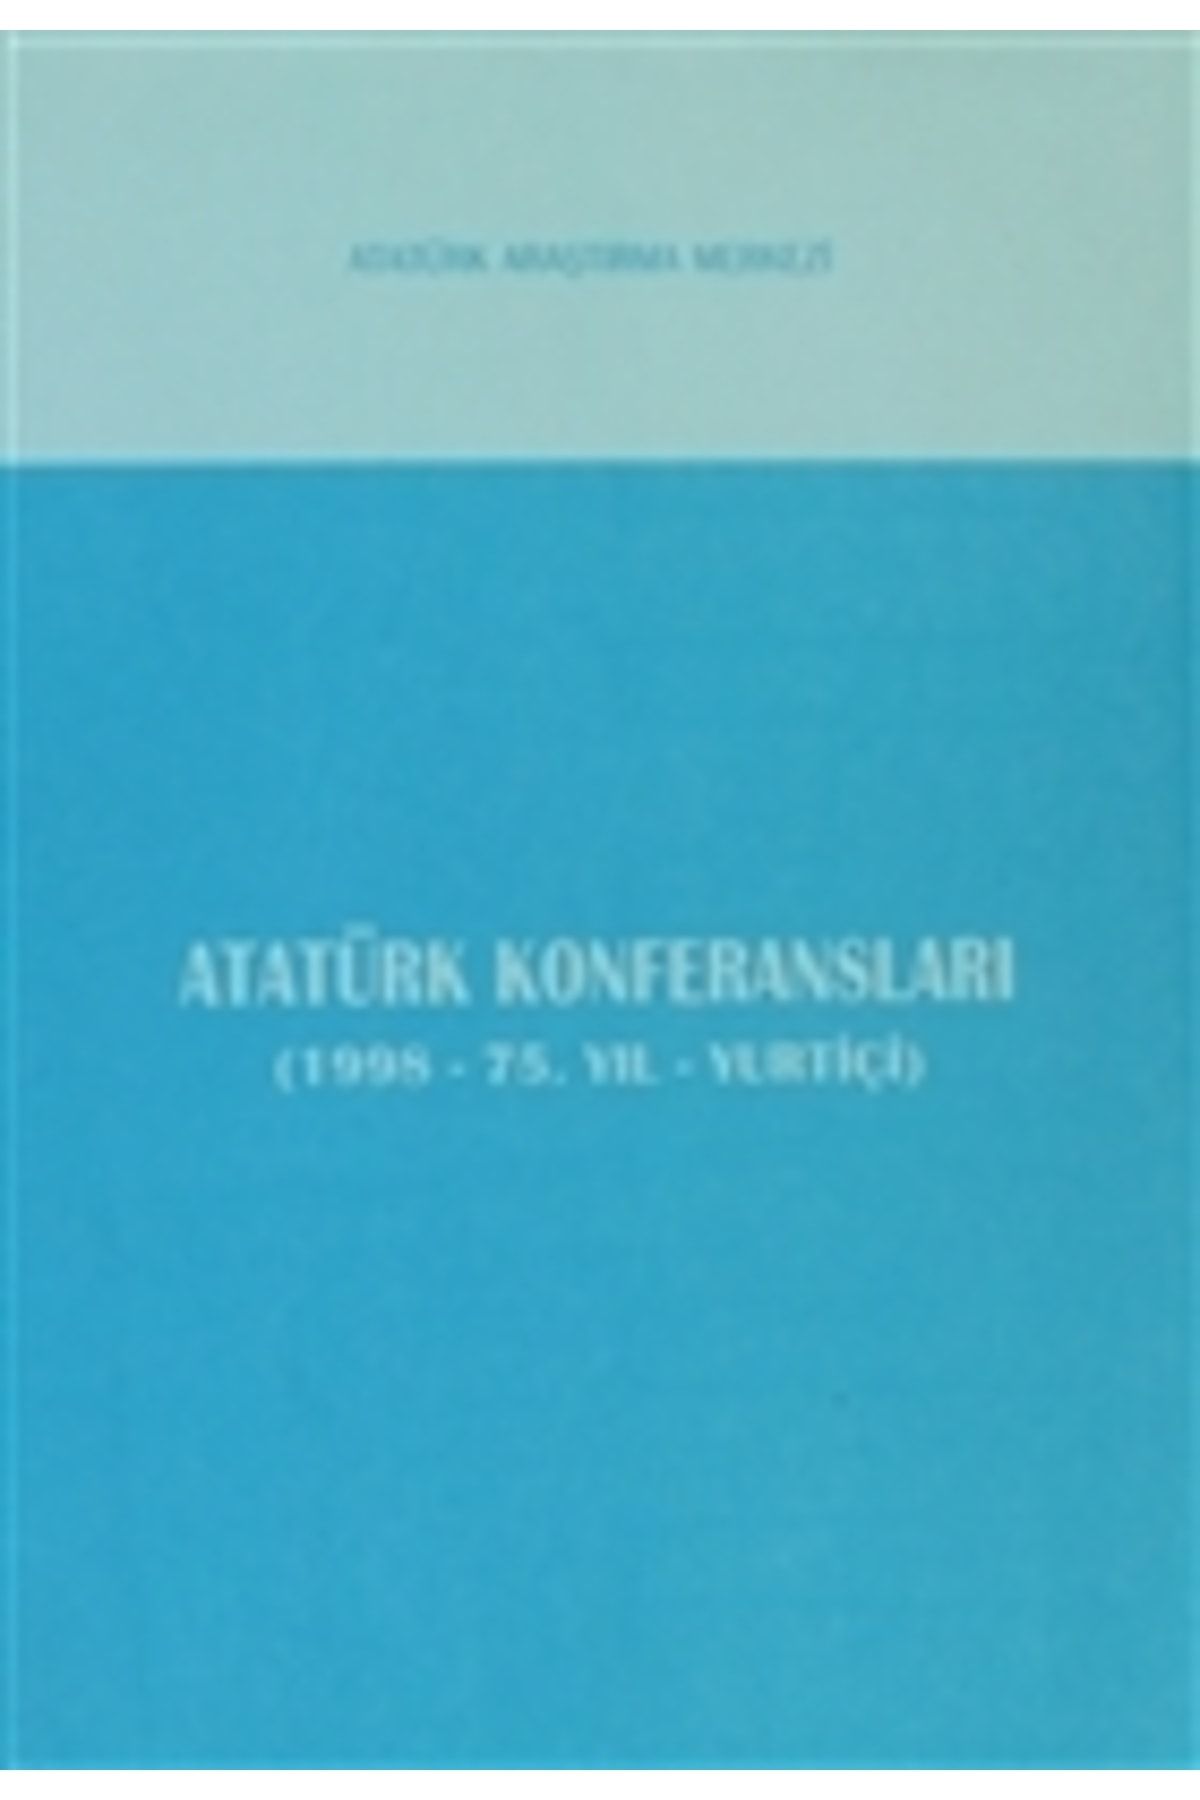 Atatürk Araştırma Merkezi Atatürk Konferansları (1998 - 75. Yıl - Yurtiçi)